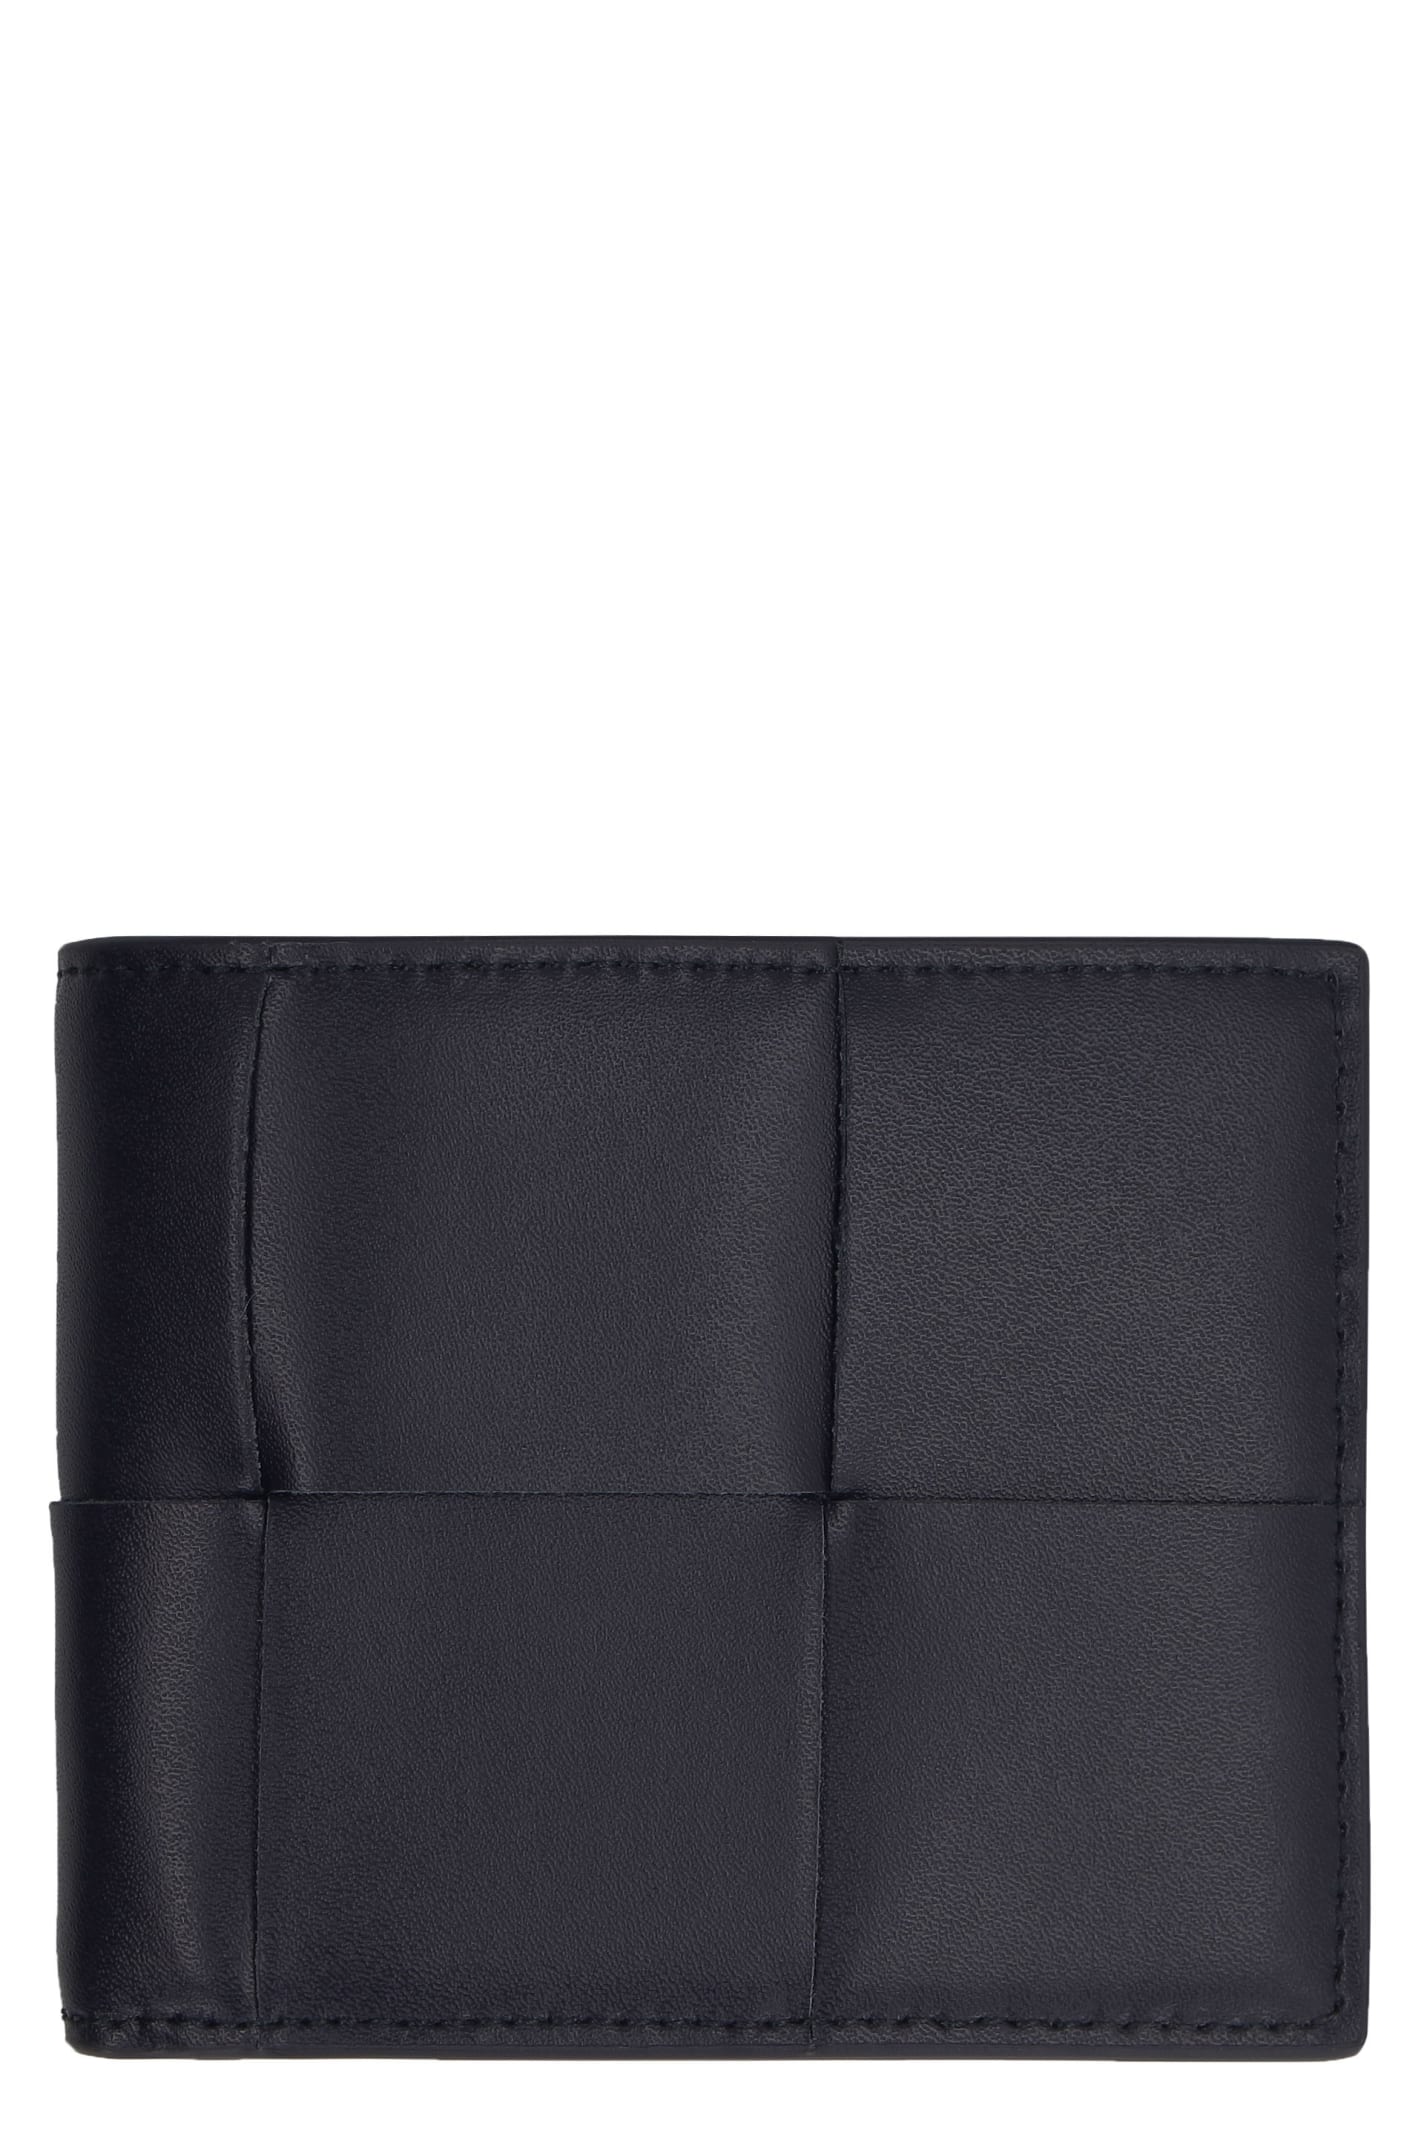 Bottega Veneta Bi-fold Calf Leather Wallet